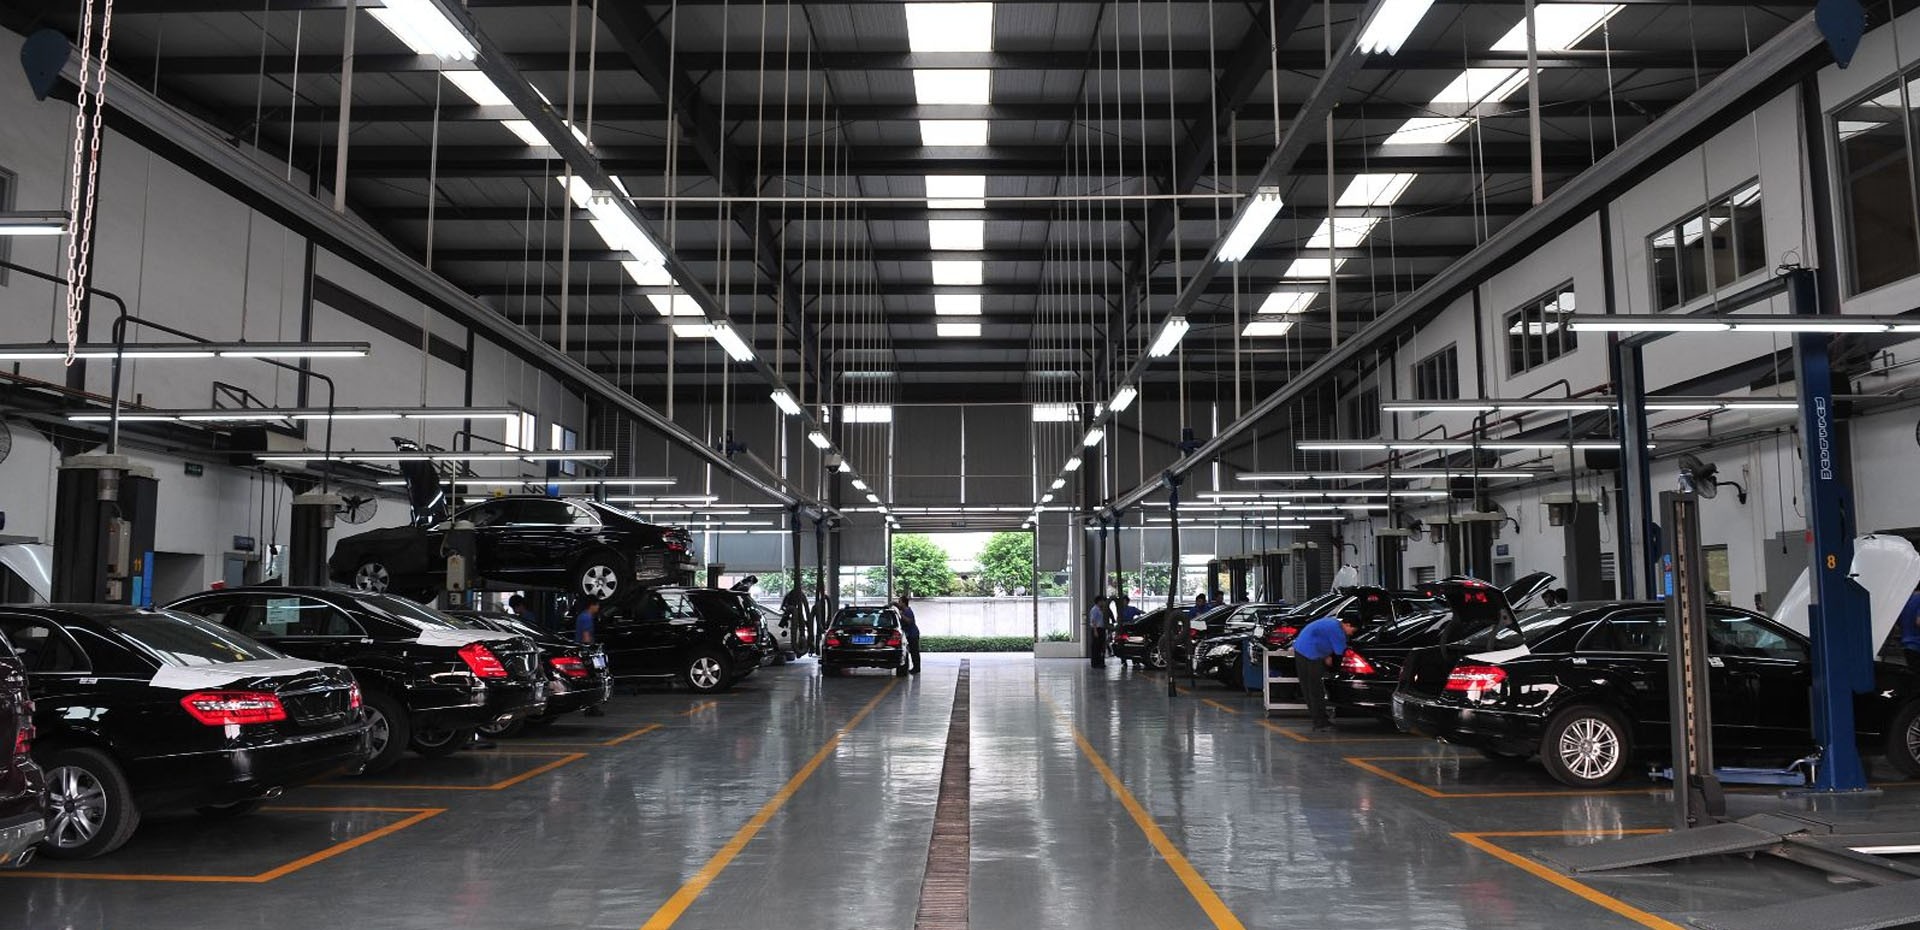 Fisco faz operação nacional de fiscalização a oficinas automóveis